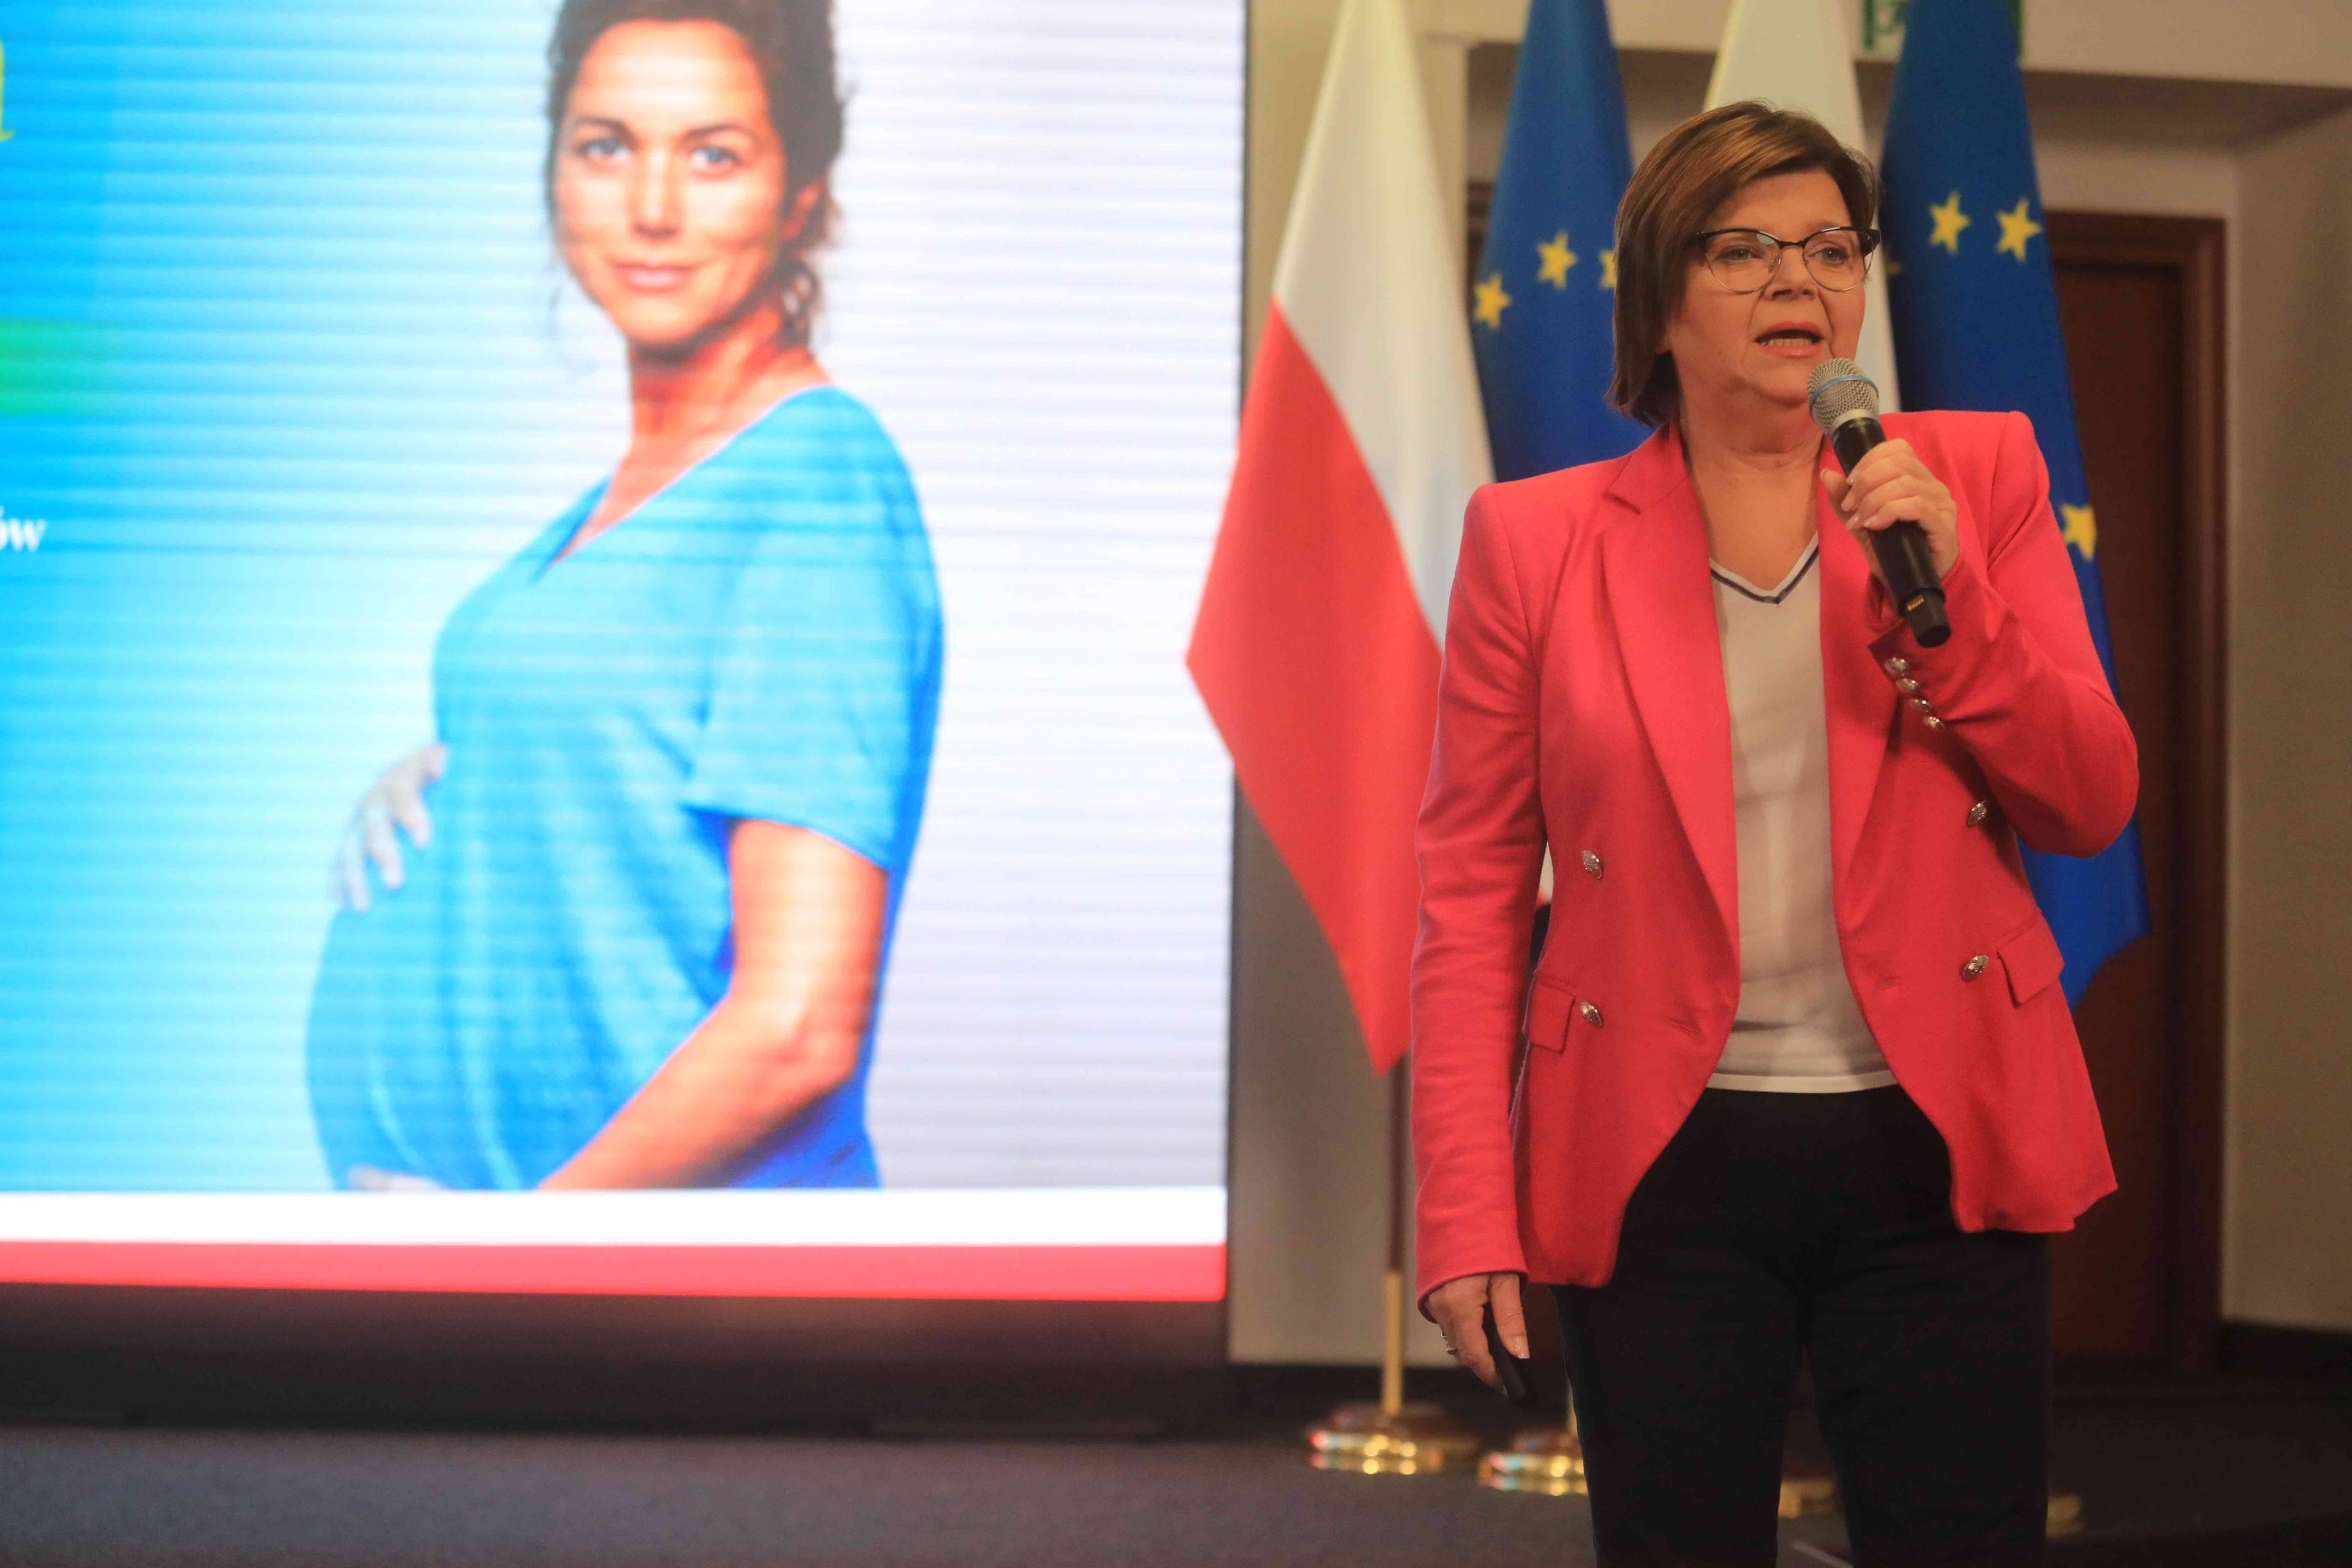 Ministra zdrowia Izabela Leszczyna podczas konferencji prasowej na tle projekcji, przedstawiającej kobietę w ciąży